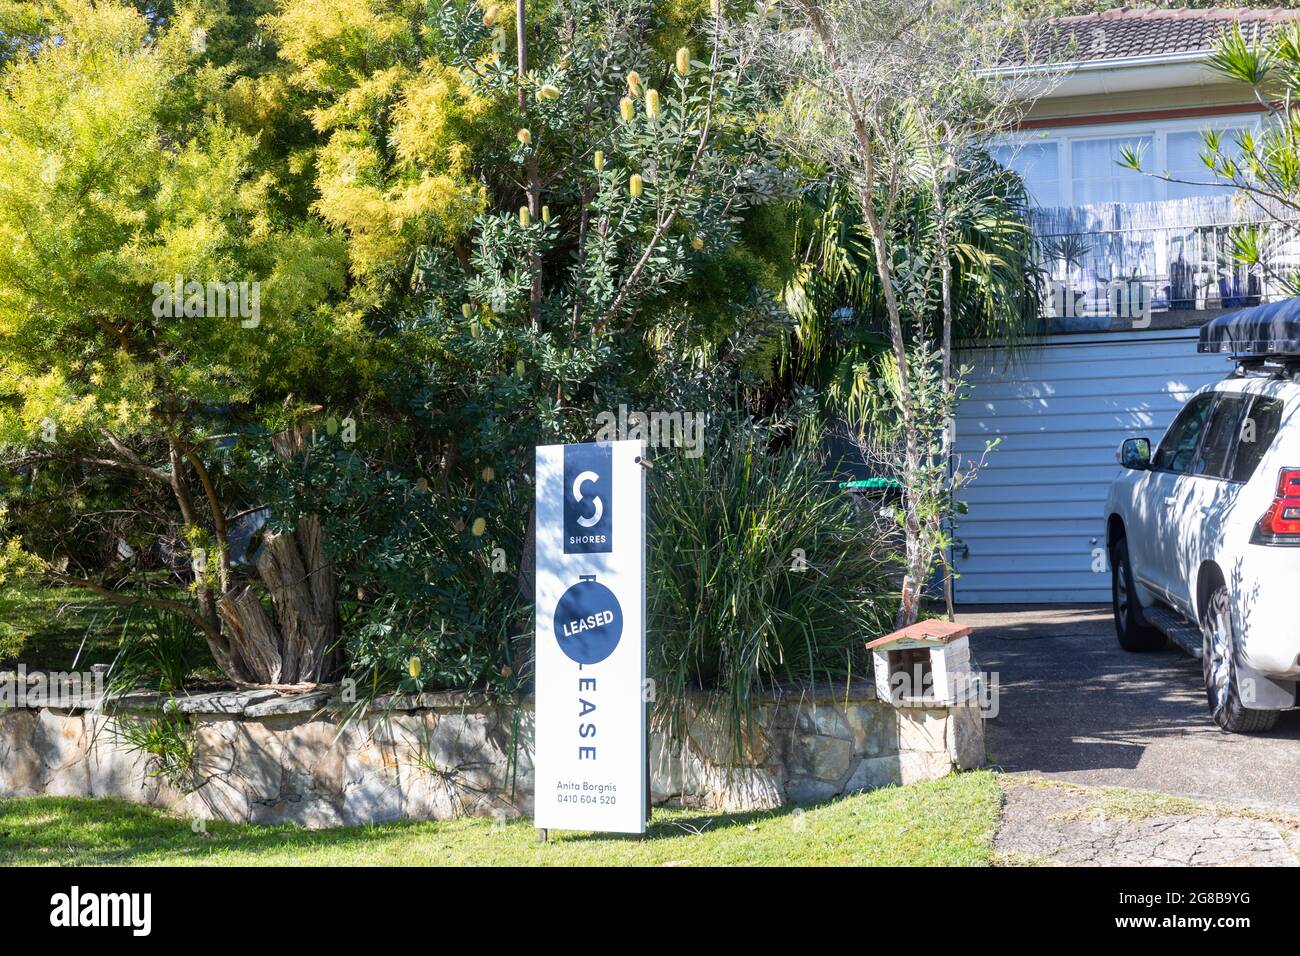 La maison australienne à Sydney a été louée par l'agent immobilier, Sydney, Australie Banque D'Images